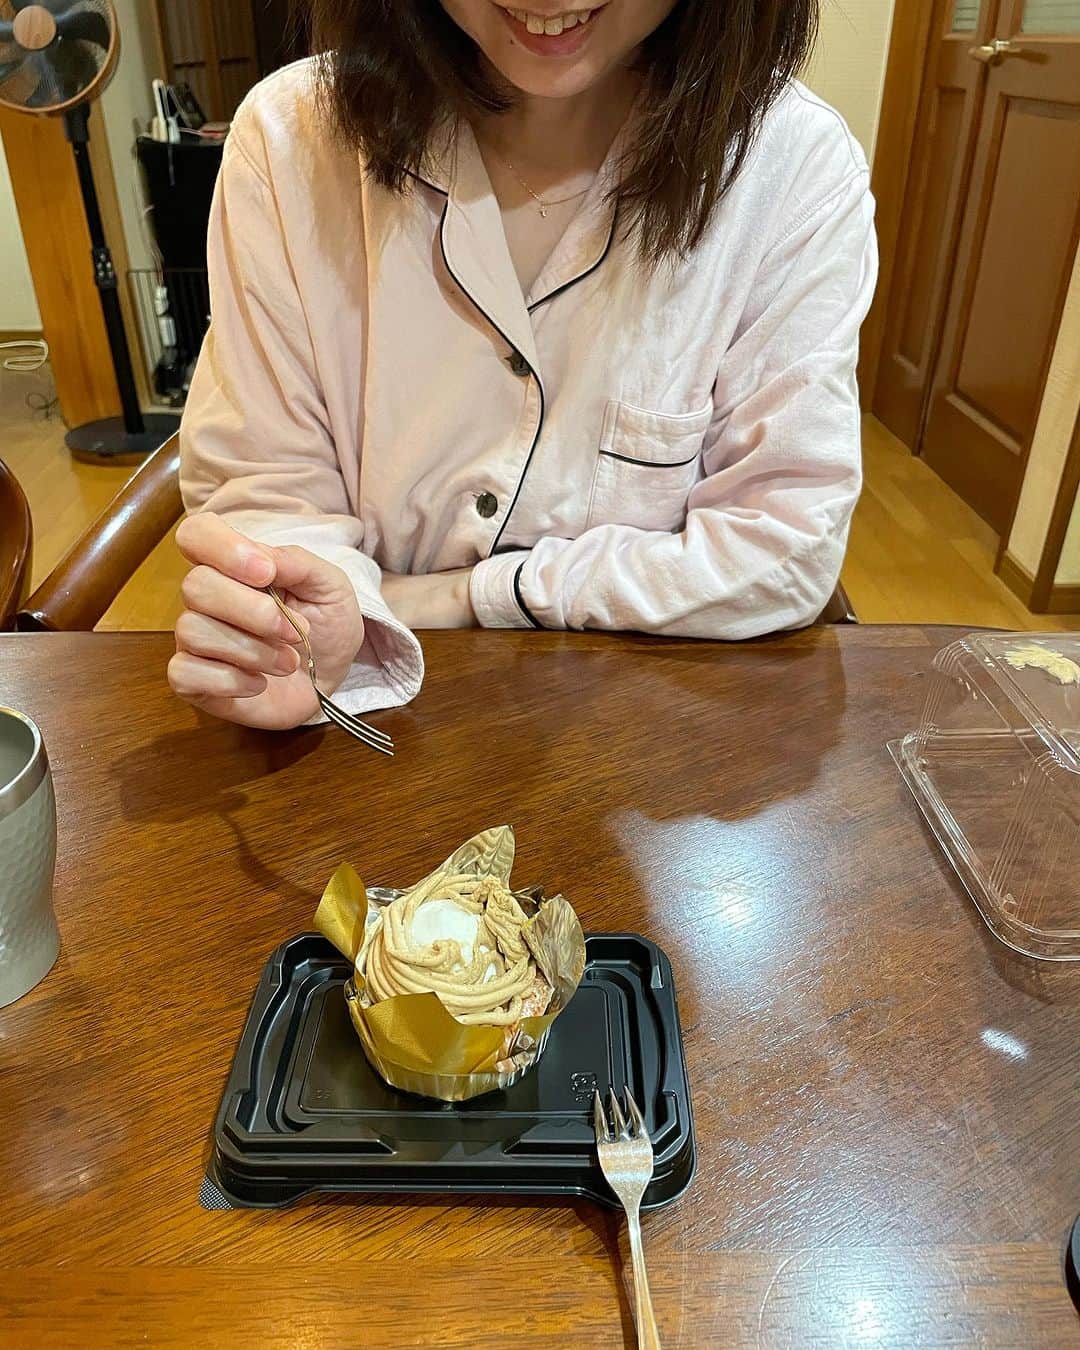 飯島直子さんのインスタグラム写真 - (飯島直子Instagram)「こんばんは^ - ^♪  今日は水曜日でした  わたしにとって水曜と木曜が 鬼門です  そして、みんなのメッセージで 気づくという  みんなのおかげで助かってます ありがとう( ´ ▽ ` )ﾉ  そして、姉再来  残しておいたケーキを食べようとしてました  おちおちしてられませんね  9.10.11日のへんじすこしです＾＾  st_shin_g51才誕生日おめでとう♪わたしも幸せだよ^_^カラダに気をつけてステキな一年にしてね♪  sami結婚34周年おめでとう♪ とくに何もない…それも良し^_^普通が幸せ♡健康に気をつけていつまでも仲良しでね♪  仁美５２才誕生日おめでとう♪ 美人さん♪お祝いしたかな^ - ^ ステキな一年になりますように♪  洋一６１才誕生日おめでとう♪ 頑張ってるね！回復してきて良かった！リハビリも頑張ってきてね！応援してるよᕦ(ò_óˇ)ᕤ  ともこ姪ソフちゃん誕生日おめでとう♪かわいい子♡いくつになったかな^ - ^元気にスクスク大きくなーれ♪  asamin４８才誕生日おめでとう♪免許の更新こだわり大事大事^ - ^外食でお祝いかな？ 健康に気をつけ良い一年になりますように^ - ^♪  抗がん剤でムカムカと闘ってる…治療お疲れさま！体調どうかな…ムカムカ飛んでけー！ あっこ！ファイト！  寝込んでた！良くなったかな？ guizi！  麻里子♪  浅草いい所だね♪成美！  愛犬二頭に話しを聞いてもらい…^ - ^更年期一緒に乗り越えようね^ ^mayumama！  しじゅうごのあやこ♪  この間の焼肉屋さんのチヂミは卵多めでフワフワでした^ ^ おいしかった！  残業がんばってね！ひと休みしながらね♪  夜勤ファイトー٩(๑❛ᴗ❛๑)۶  さなえ、大丈夫かな？！  観劇に感激したよ笑ぴょん♪  プール！むかしジムで泳いでた^ - ^運動で水泳が一番すきだよ！ribbon.k！  ひろっぺ！心構えがすばらしいね…たくさんの経験がチカラとなる^ - ^応援してるよ、カラダに気をつけて頑張ってね！  直美ぃぃぃ人生考えても仕方ないなるようににしかならん！  次の試験がんばろう！ひかる！  アニー！！がんばれᕦ(ò_óˇ)ᕤ 祈ってるよ！  歯医者が苦手で過呼吸に…情けなく涙が…そんな事ないよ！ 苦手なひと、パニック起こすひといっぱいいるんだよ(*´-`) 大丈夫。気にしちゃだめ^ - ^ 歯医者さんに事前に相談しておくと、気にかけてくれる良い歯医者さんあるよ^ - ^ 今日はゆっくりお昼寝できたかな^ - ^neonmama！  かつひさ♪  今日は水曜日、総攻撃笑キタムラくん♪  今日も学校がんばったね！萌！ エライぞ٩(๑❛ᴗ❛๑)۶  末吉♪夢叶えようね！  今週もがんばろ！あゆみ！  ダメな嫁なんかじゃ全然ない！ がんばってる！としこ^ - ^  ユカ！大丈夫かな…？  あやこ！治療お疲れさま^ - ^ 頑張ってるね、可愛いウィッグつけてファイトと乗り切ってね 応援してるよ٩(๑❛ᴗ❛๑)۶  mauim…すぐ冬がくるよ がんばろうね(*´-`)  だんどりくん、ありがとう！！  レモンケーキ！スゴイ！たまき！  バリ好いとーとよ♡  すず♪  よぉし！一丁やってみよう！ まぁ♪！！  わたしは姉と軽く掃除をしました、本当にかるく  姉がいるともっとやる気がわきません  本物の癒し系です  今日も一日お疲れさまでした  みんなゆっくり眠れますように  おやすみなさい( ´ ▽ ` )ﾉ♡  また明日♡♡  明日は木曜日だよ！！」10月11日 21時34分 - naoko_iijima_705_official